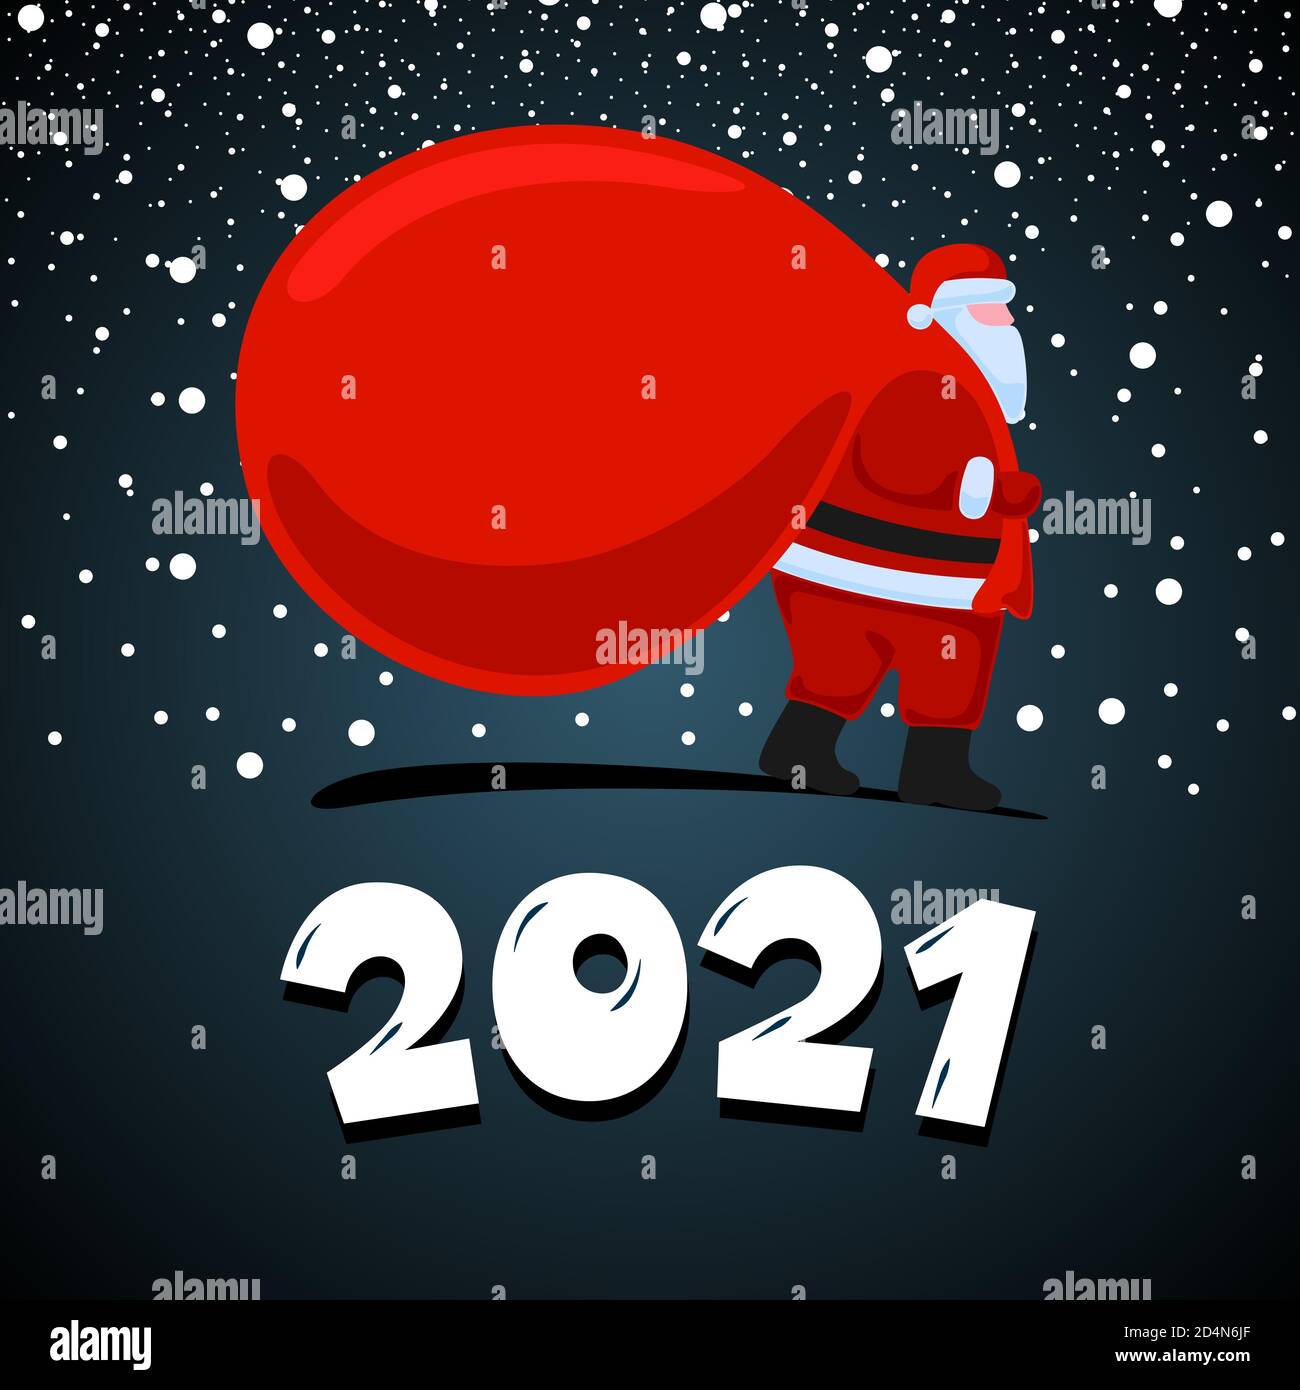 Santa Claus Cartoon Charakter kommen und trägt große schwere Geschenke rote Tasche. Weihnachten und Happy New 2021 Jahre Urlaub Grußkarte auf Nacht Hintergrund. Vektor Feier Kalender Poster Illustration Stock Vektor